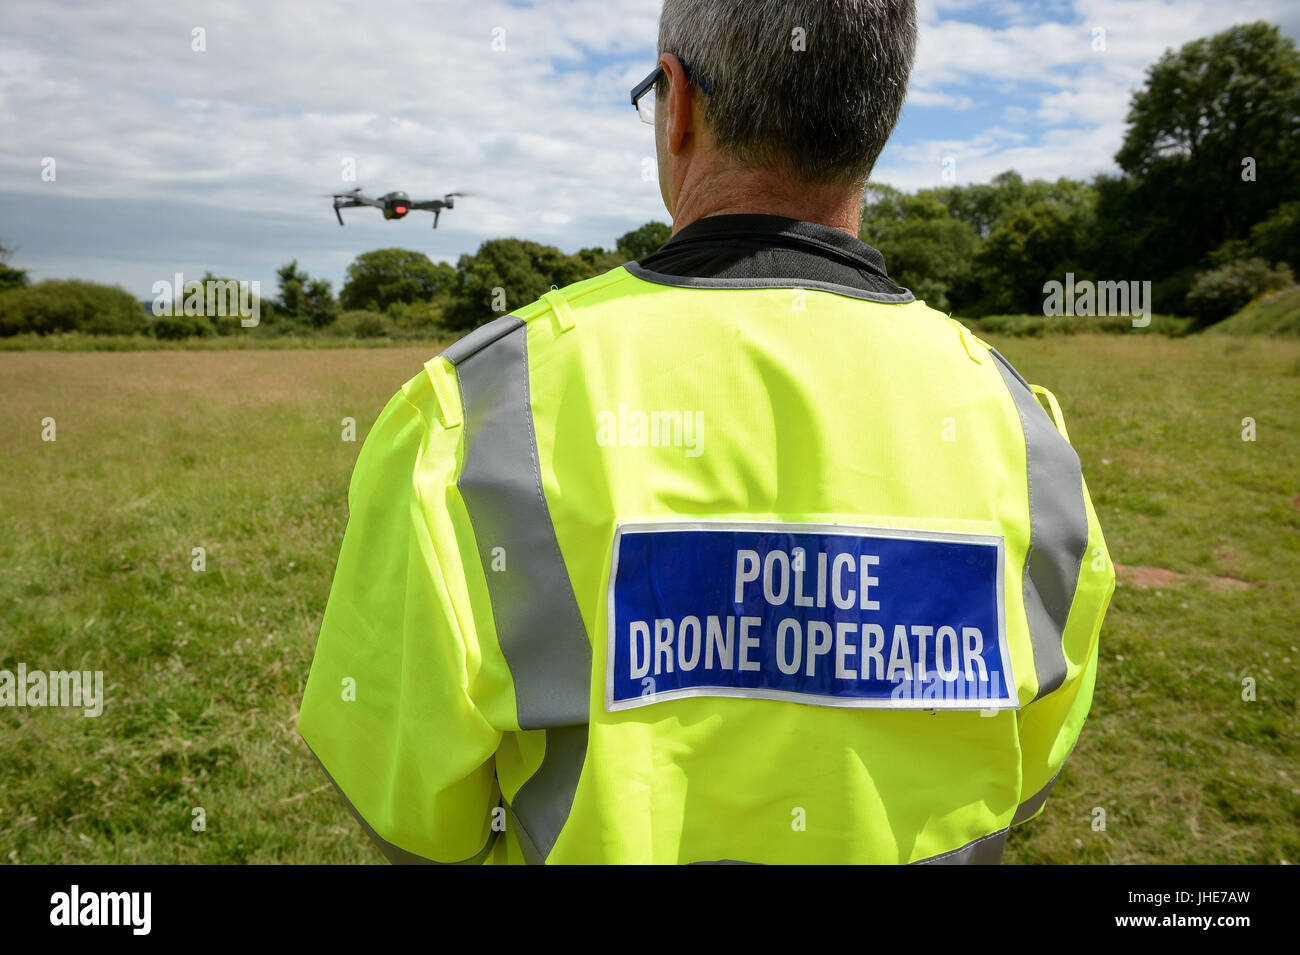 Un oficial de Devon & Cornwall Police vuela un DJI Inspire 1s drone, ya que lanzan la primera unidad de drone totalmente operativa utilizada por la policía en Westpoint Arena en Clyst St Mary, cerca de Exeter, en cooperación con Dorset Police. Foto de stock